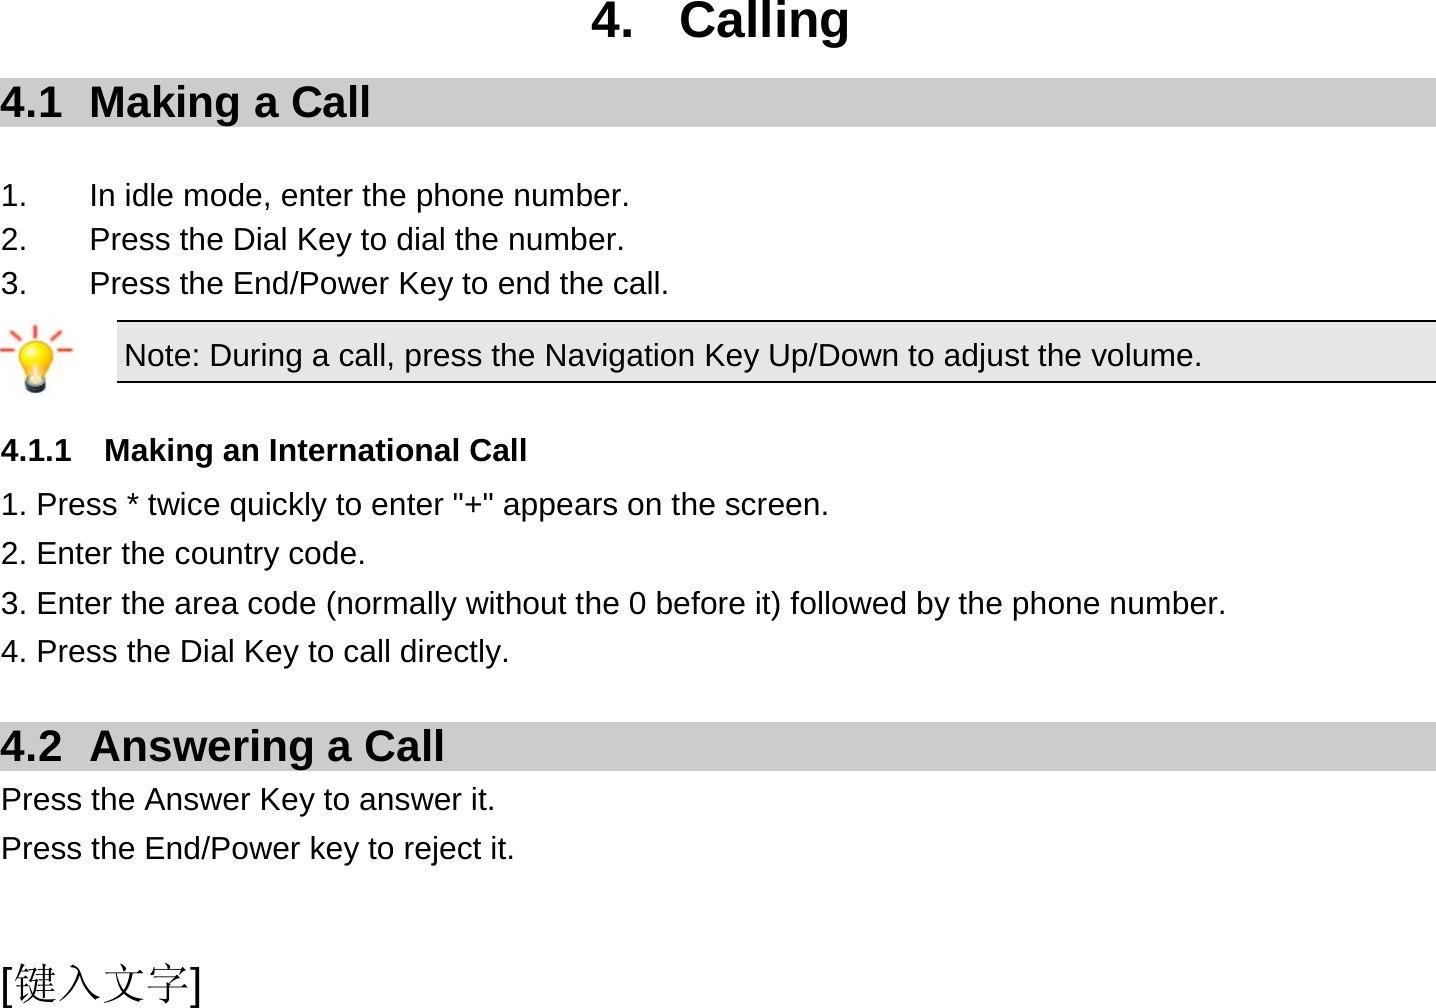  [键入文字] 4. Calling 4.1  Making a Call  1.  In idle mode, enter the phone number. 2.  Press the Dial Key to dial the number. 3.  Press the End/Power Key to end the call. Note: During a call, press the Navigation Key Up/Down to adjust the volume.  4.1.1  Making an International Call 1. Press * twice quickly to enter &quot;+&quot; appears on the screen. 2. Enter the country code. 3. Enter the area code (normally without the 0 before it) followed by the phone number. 4. Press the Dial Key to call directly.  4.2 Answering a Call Press the Answer Key to answer it. Press the End/Power key to reject it.  